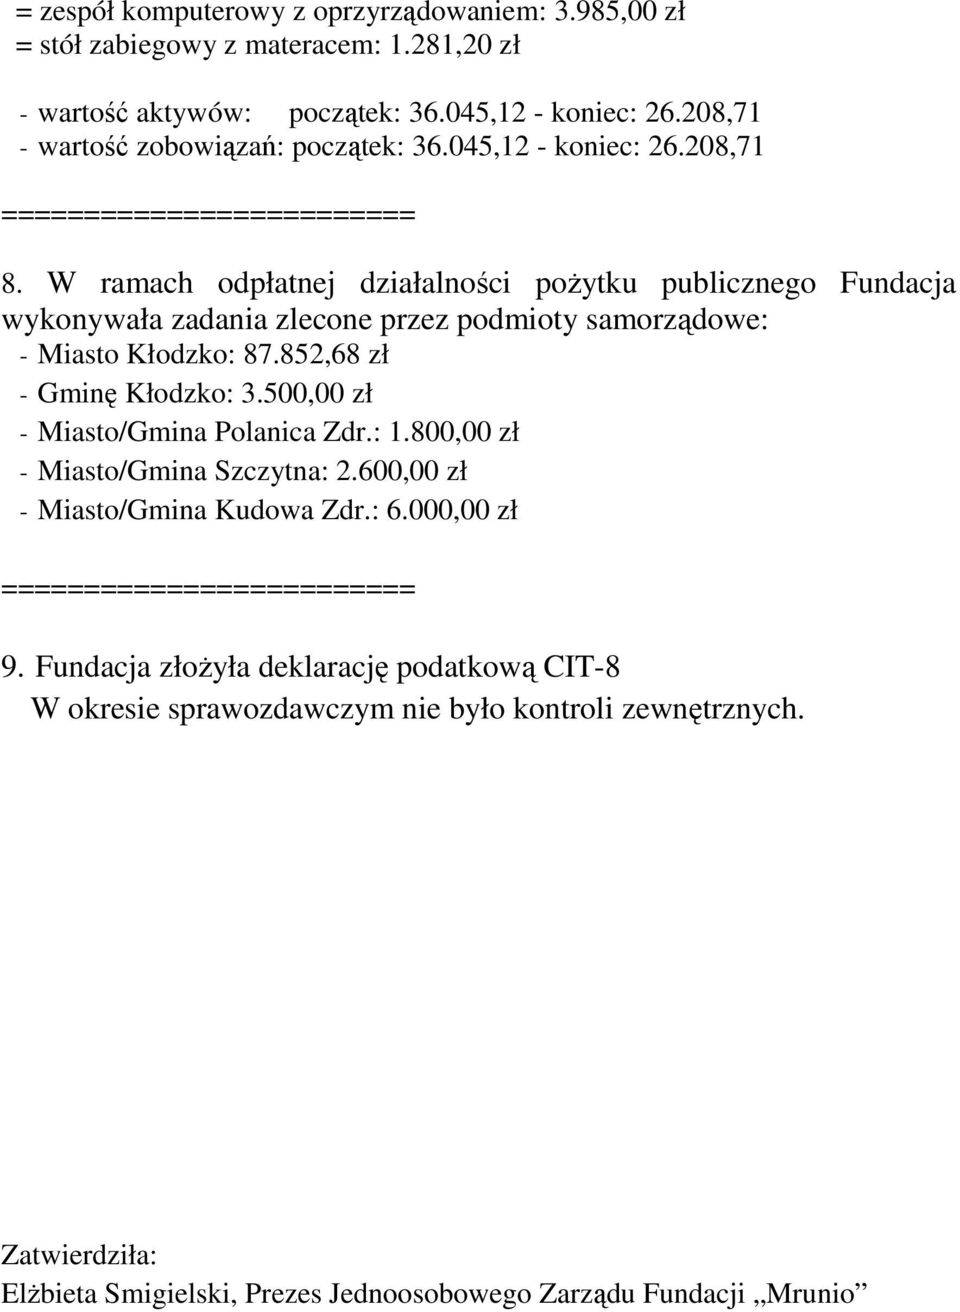 W ramach odpłatnej działalności poŝytku publicznego Fundacja wykonywała zadania zlecone przez podmioty samorządowe: - Miasto Kłodzko: 87.852,68 zł - Gminę Kłodzko: 3.